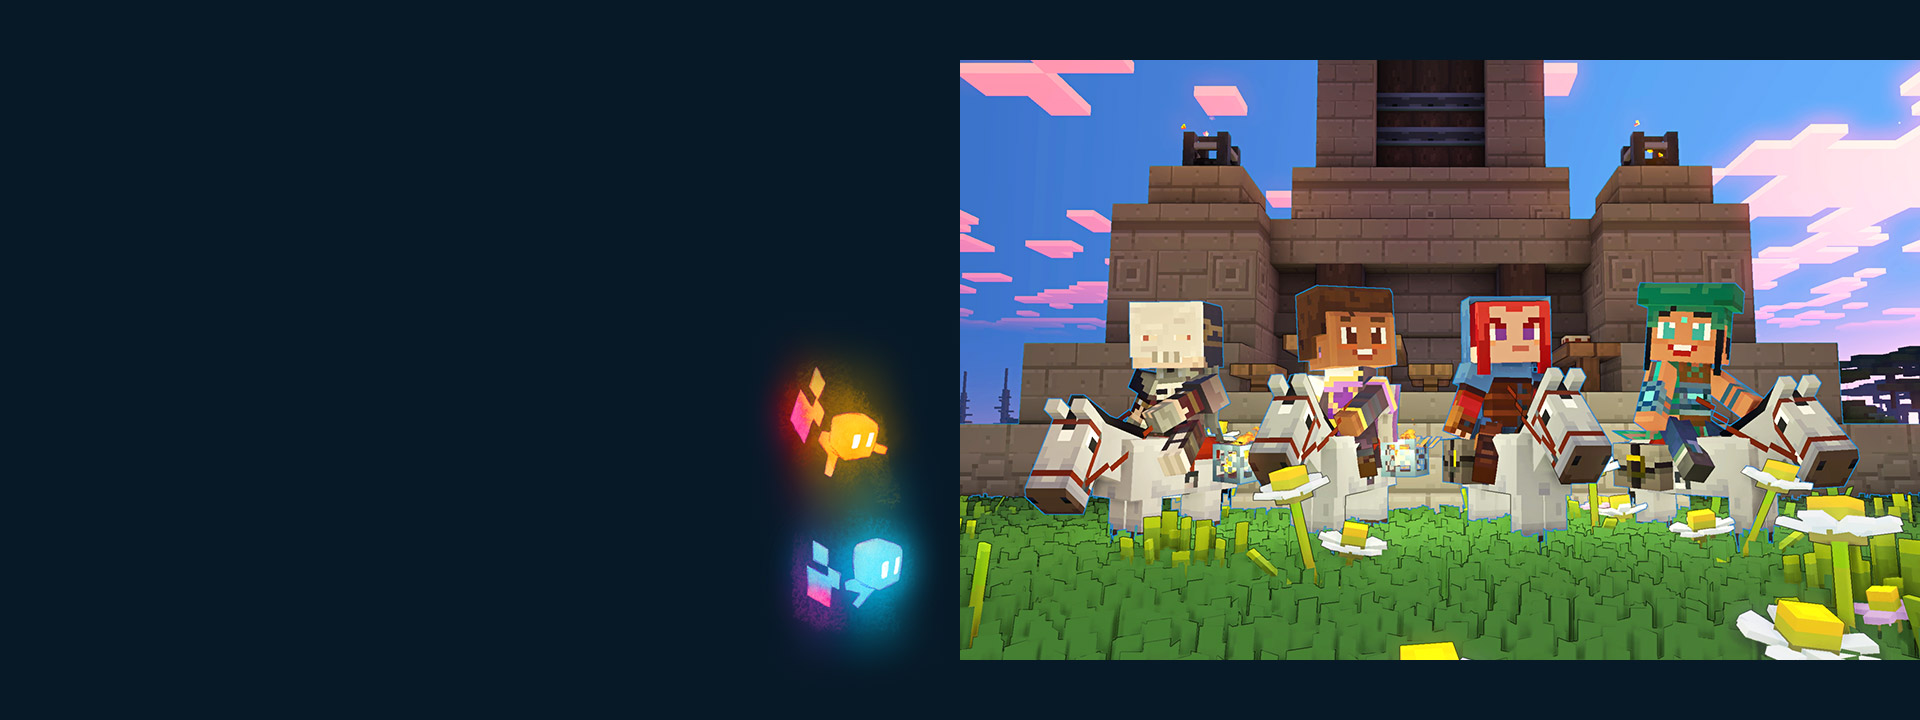 Vier spelers verzamelen zich op hun paarden in de Overworld naast een tempel.